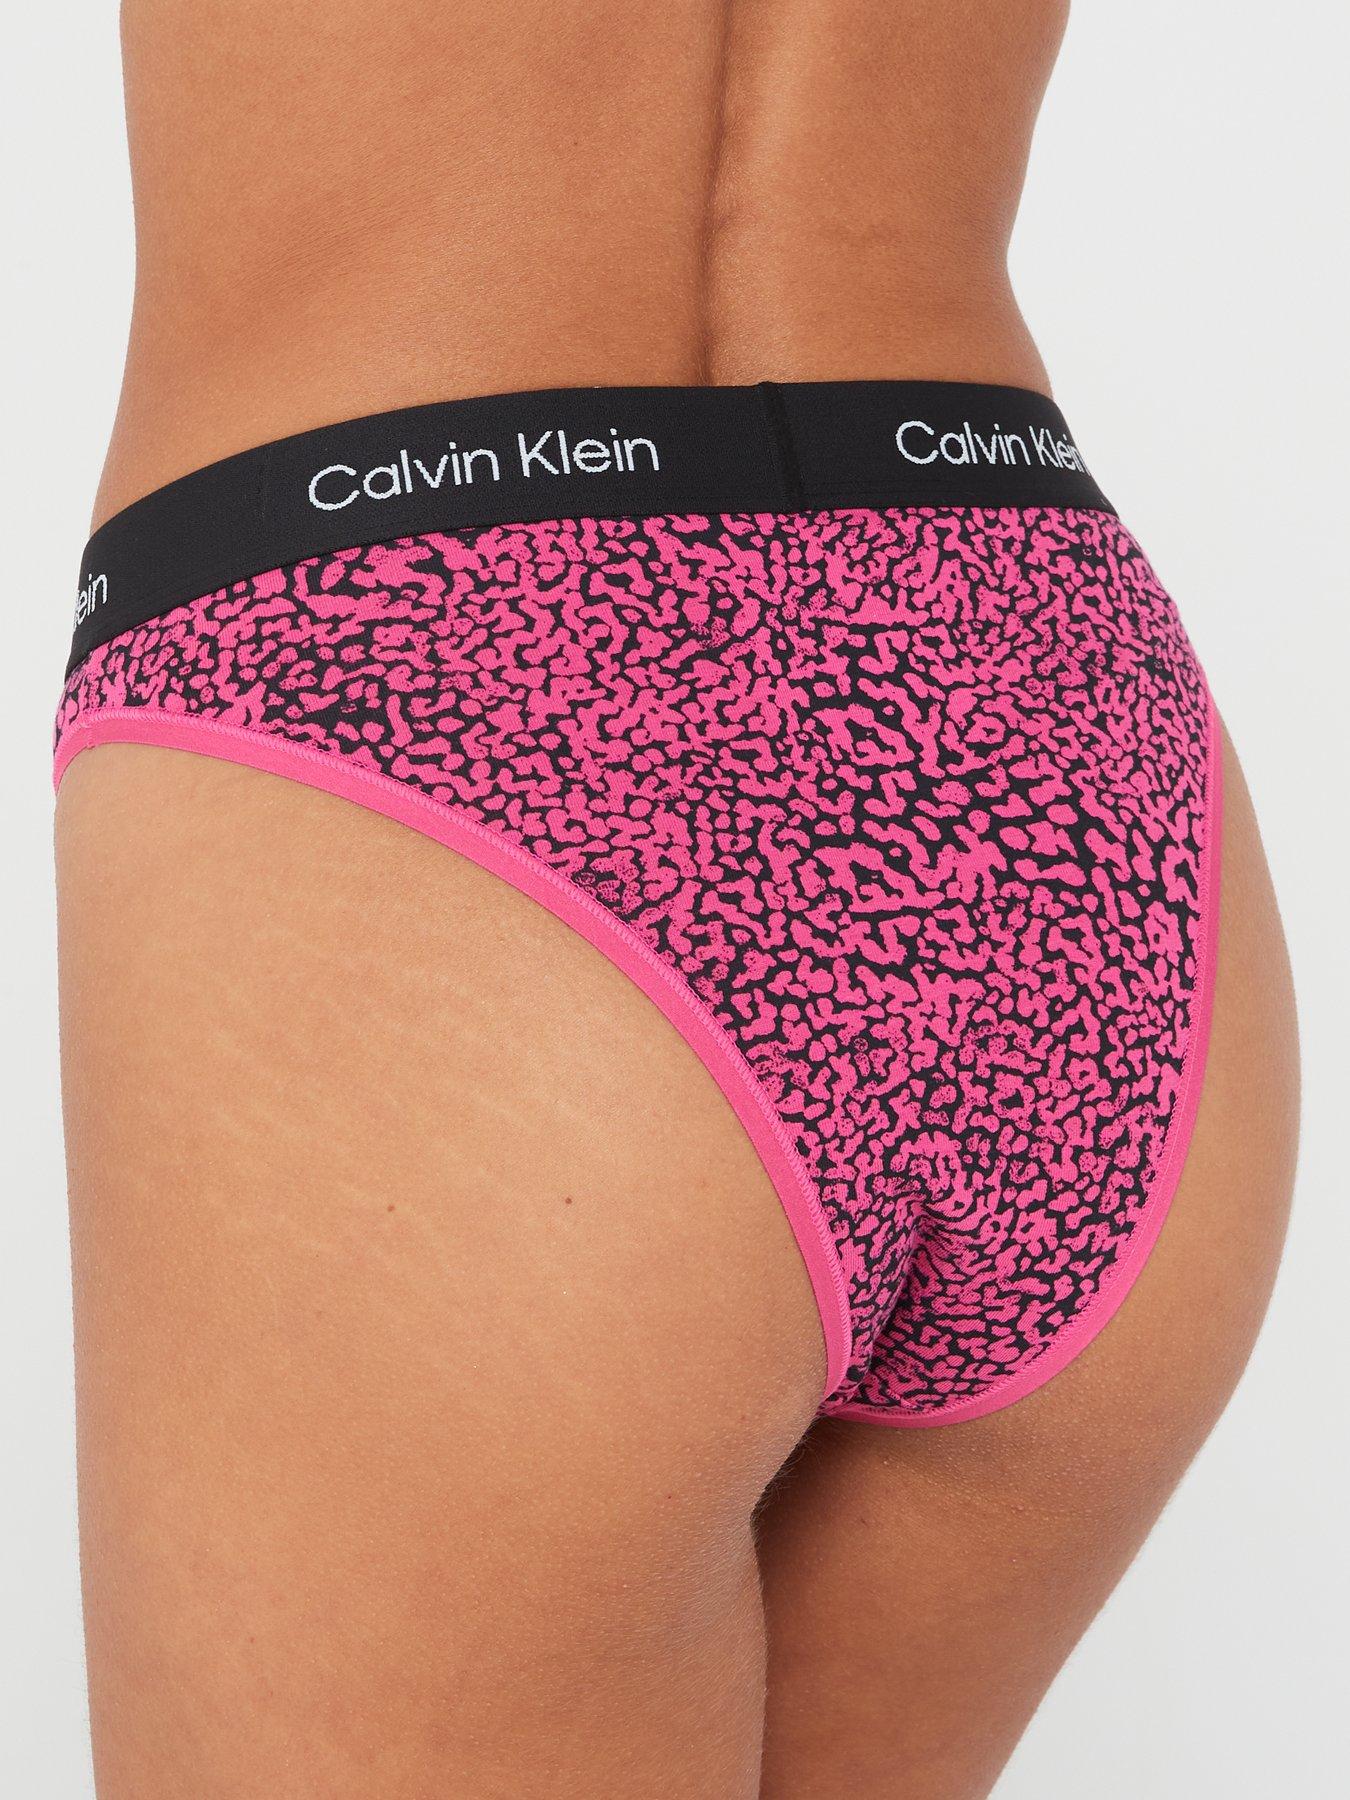 Calvin Klein 1996 Cotton High Waist Brazilian Brief - Pink